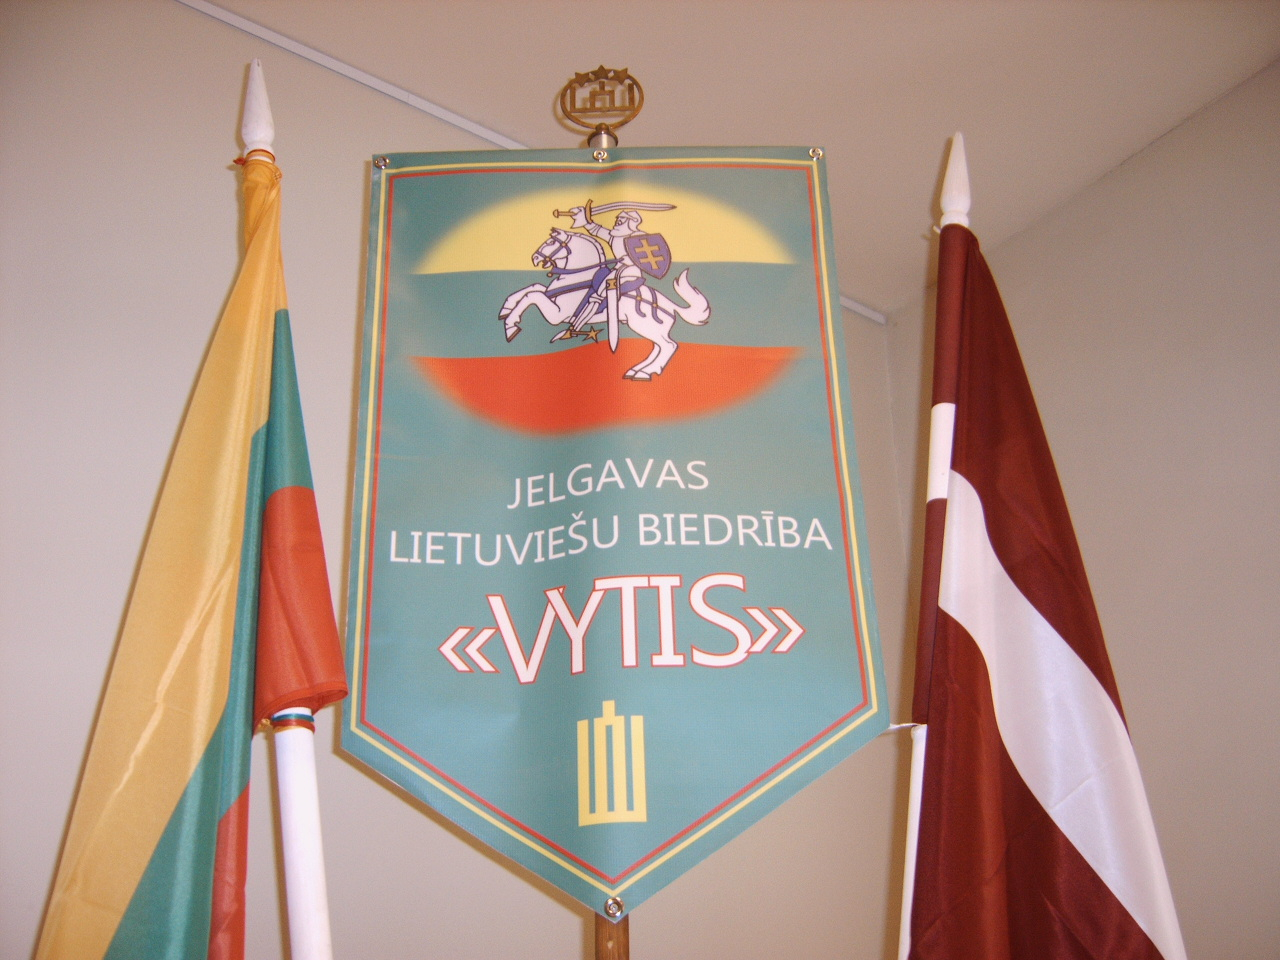 Jelgavas lietuviešu biedrība "Vītis" atzīmēs Lietuvas Republikas neatkarības 99. gadadienu